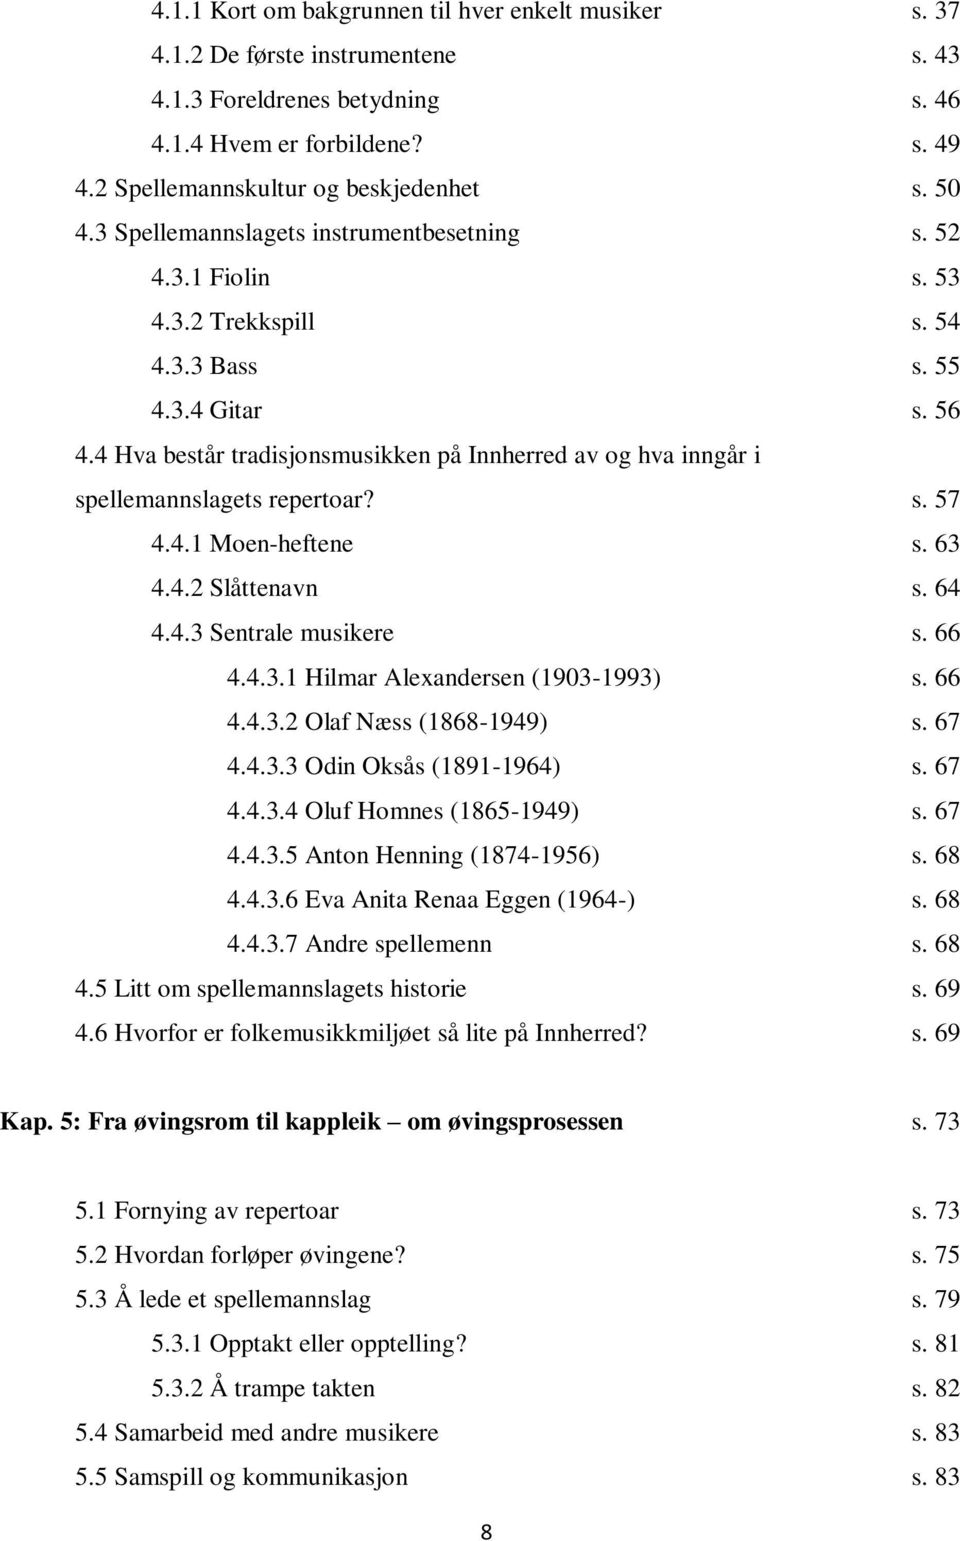 4 Hva består tradisjonsmusikken på Innherred av og hva inngår i spellemannslagets repertoar? s. 57 4.4.1 Moen-heftene s. 63 4.4.2 Slåttenavn s. 64 4.4.3 Sentrale musikere s. 66 4.4.3.1 Hilmar Alexandersen (1903-1993) s.